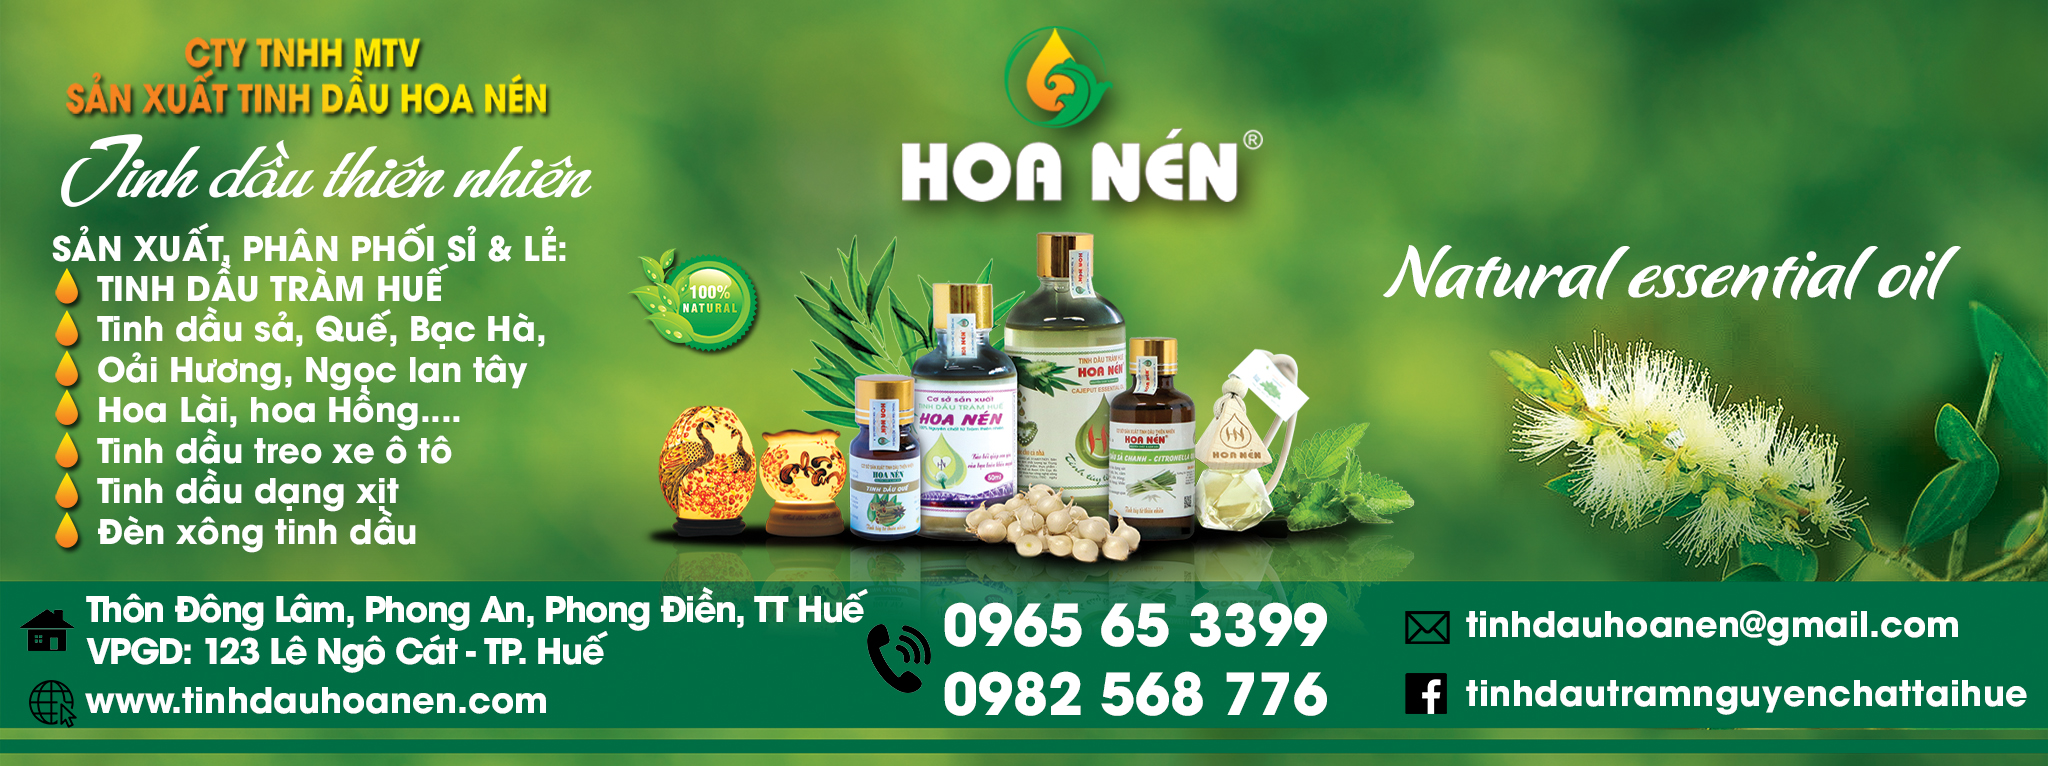 Tinh dầu tràm Hoa Nén đã được Sở Y tế Thừa Thiên Huế kiểm định chất lượng 